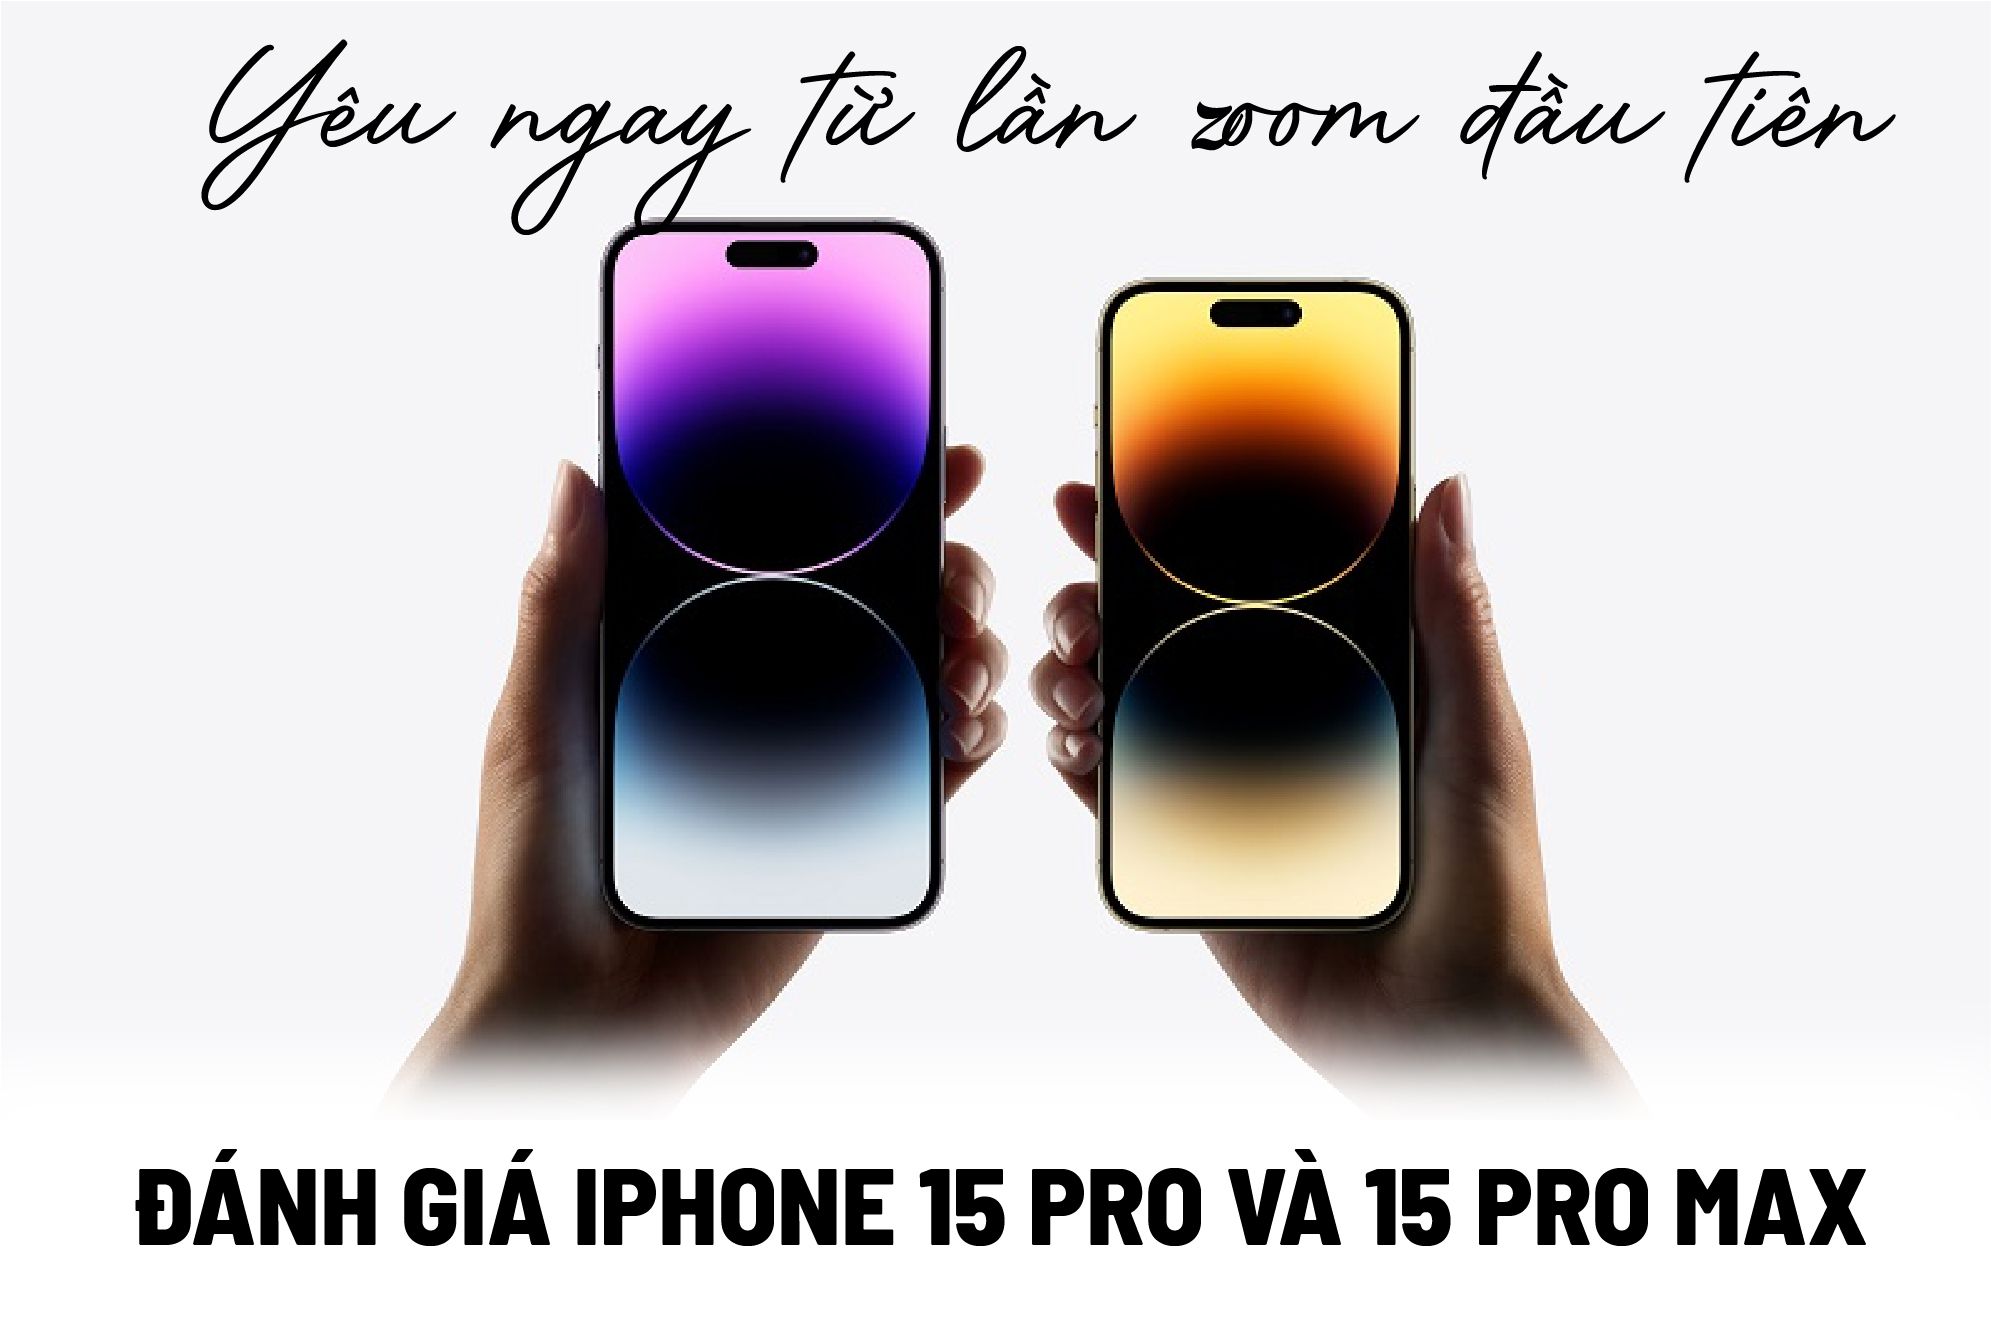 Đánh giá iPhone 15 Pro và 15 Pro Max: Yêu ngay từ lần zoom đầu tiên